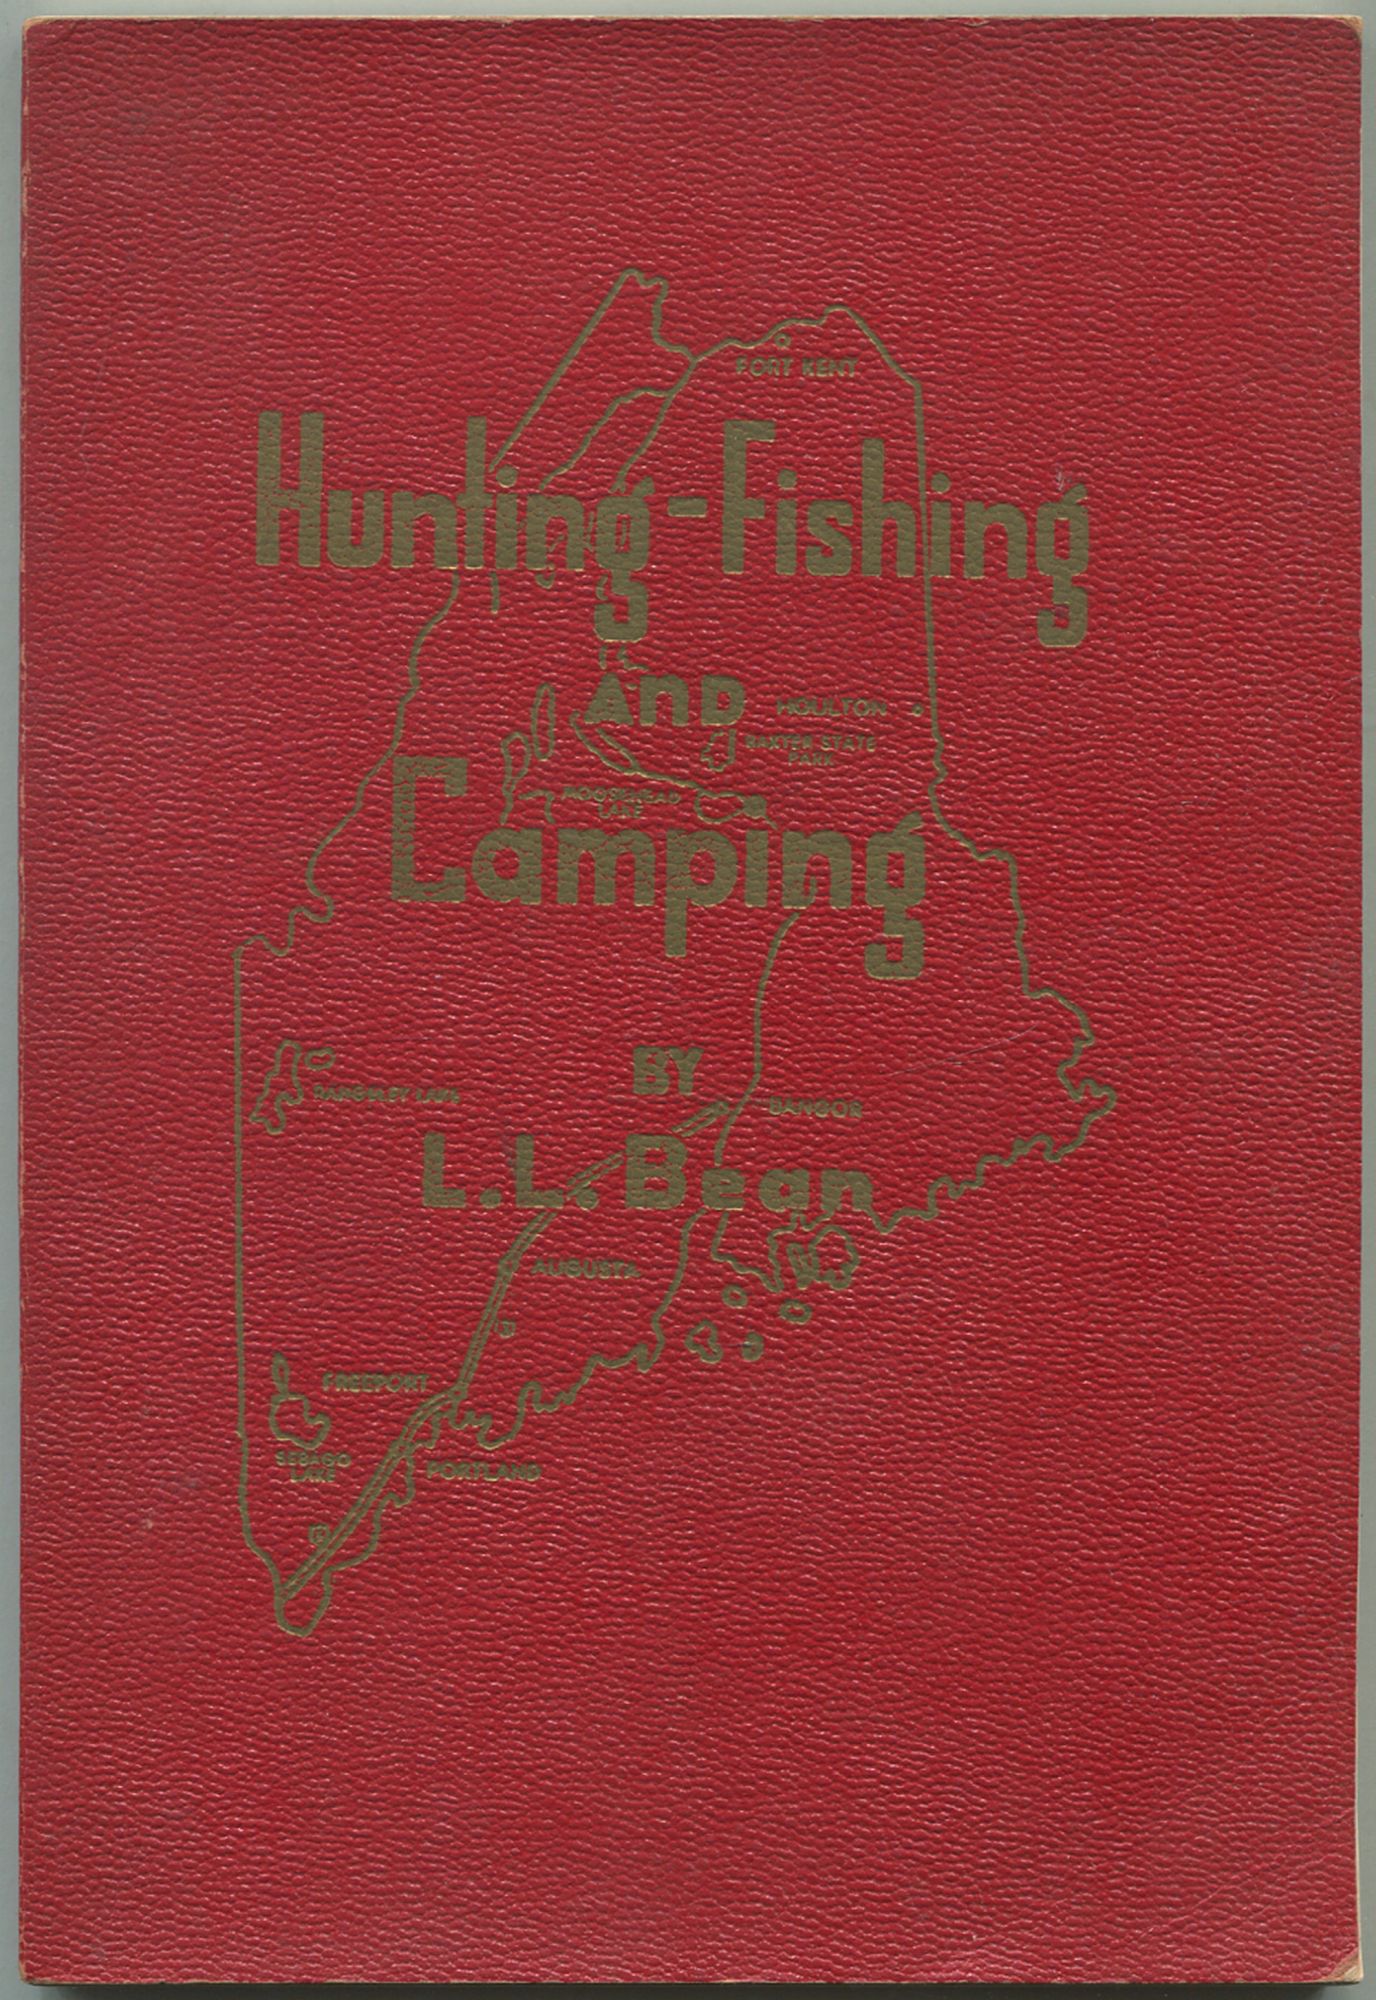 Hunting-Fishing and Camping